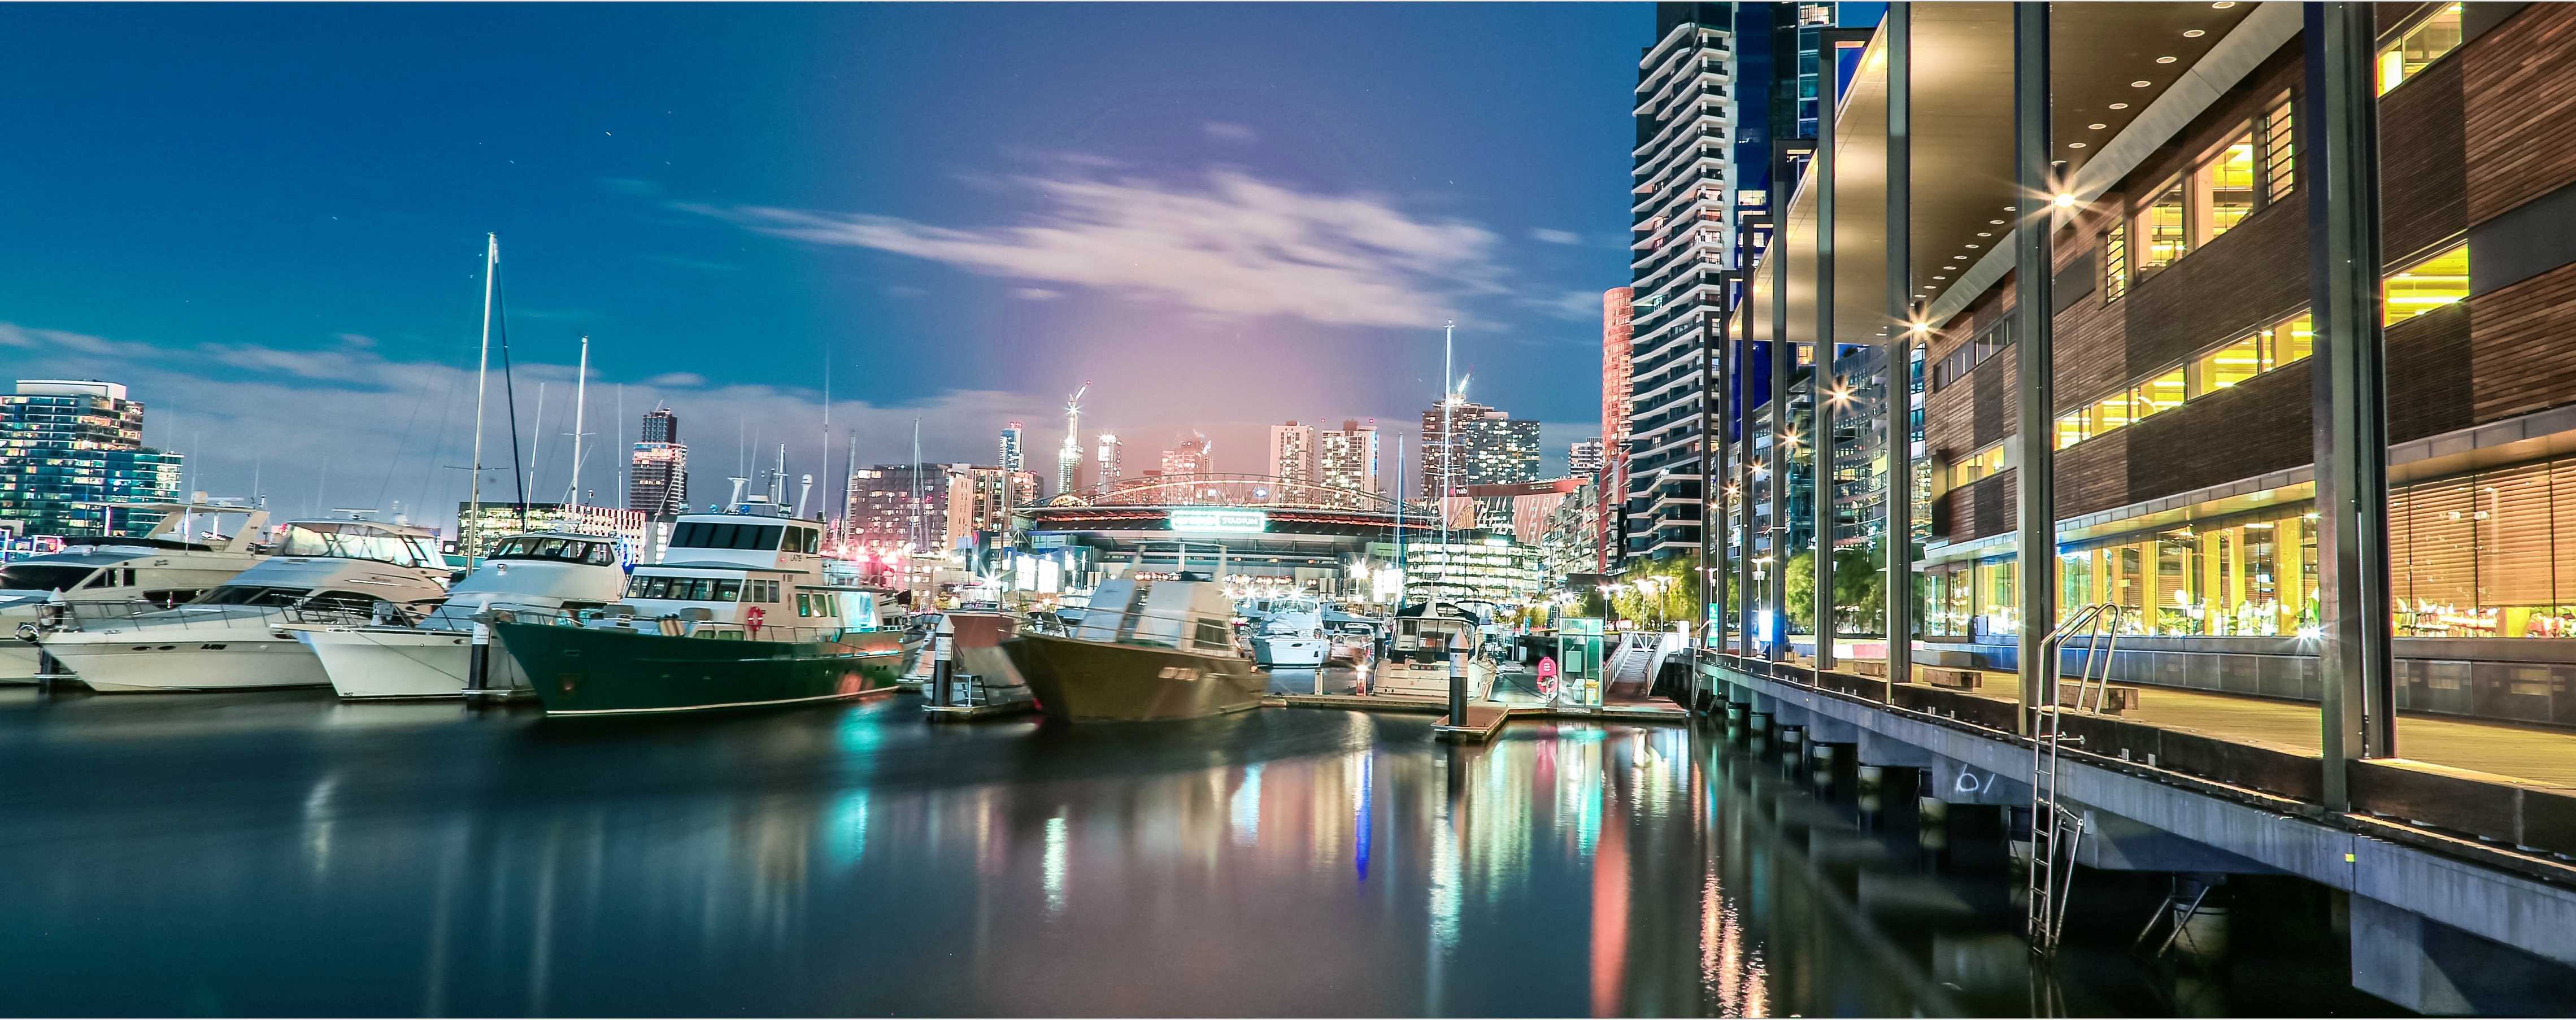 Barcos en el puerto deportivo por la noche mediante una interfaz de usuario digital